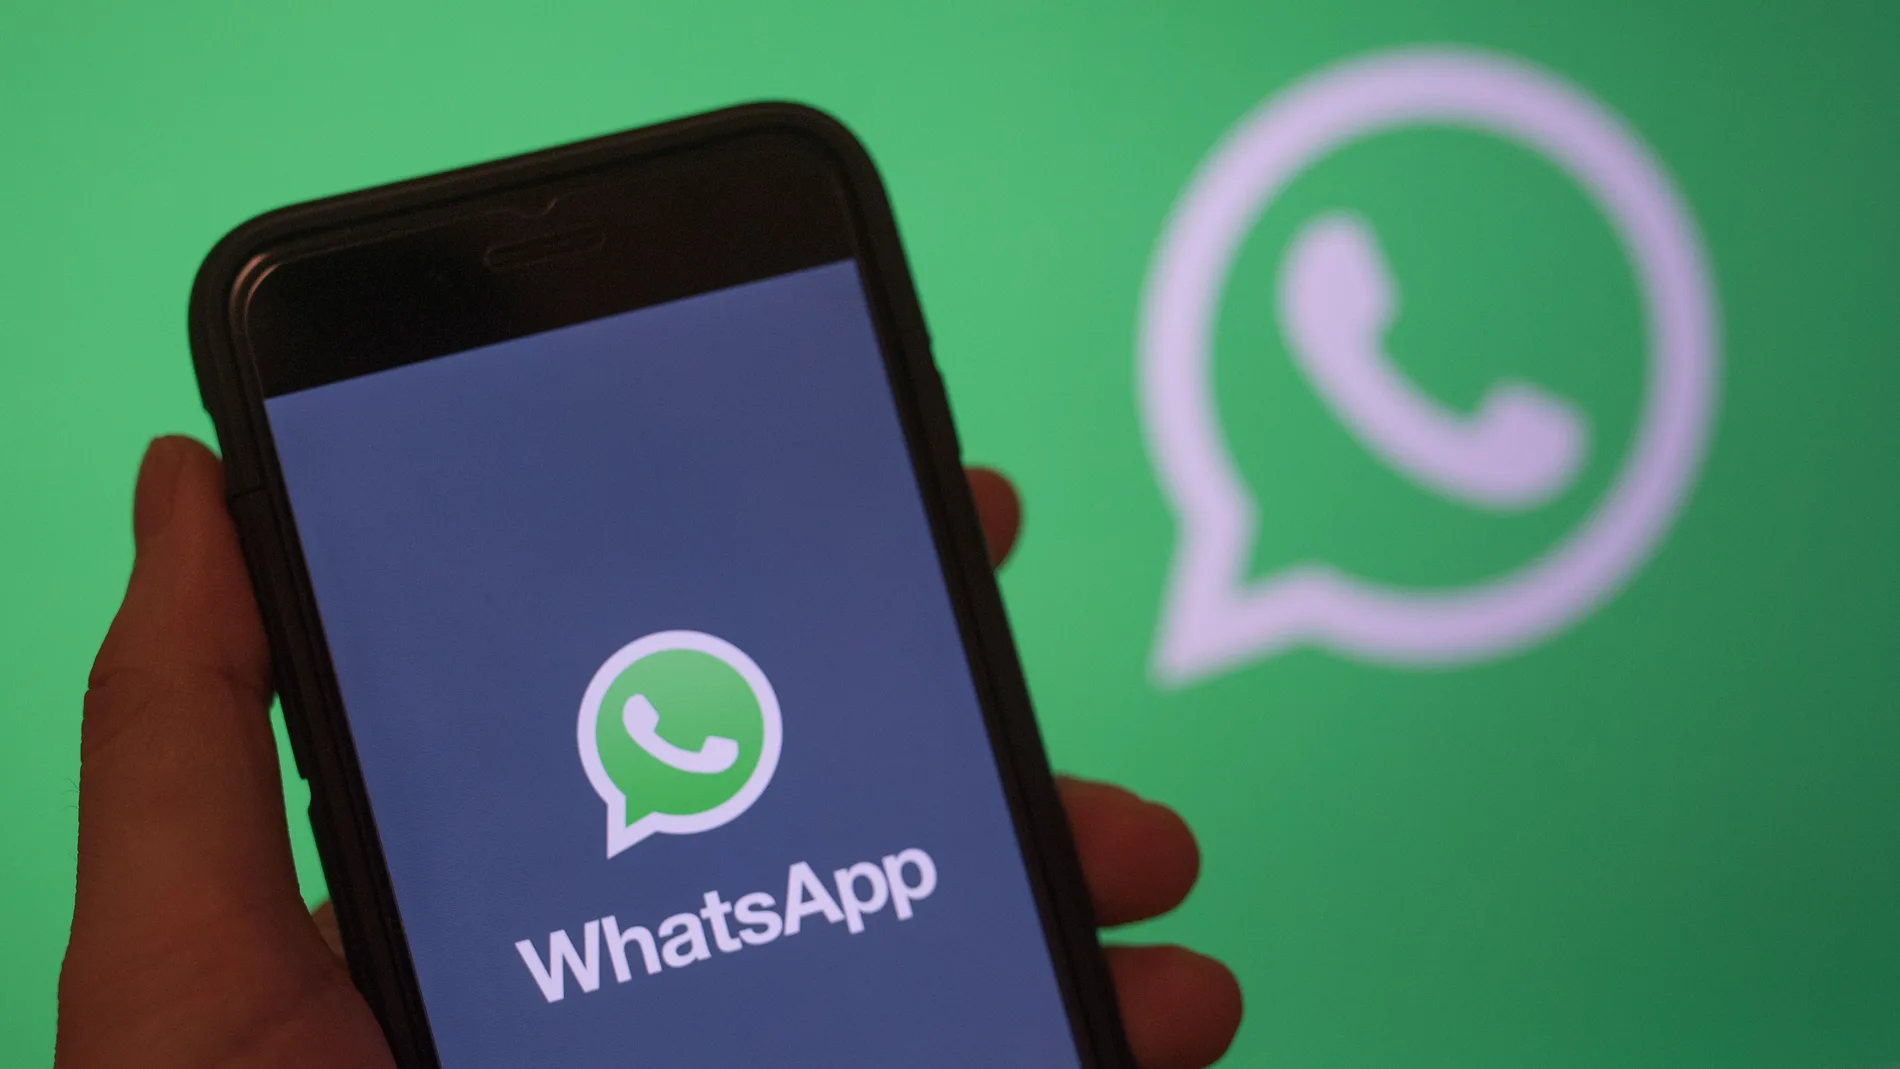 La nueva función ya está disponible en las versiones beta de WhatsApp, tanto para Android como para iOs.